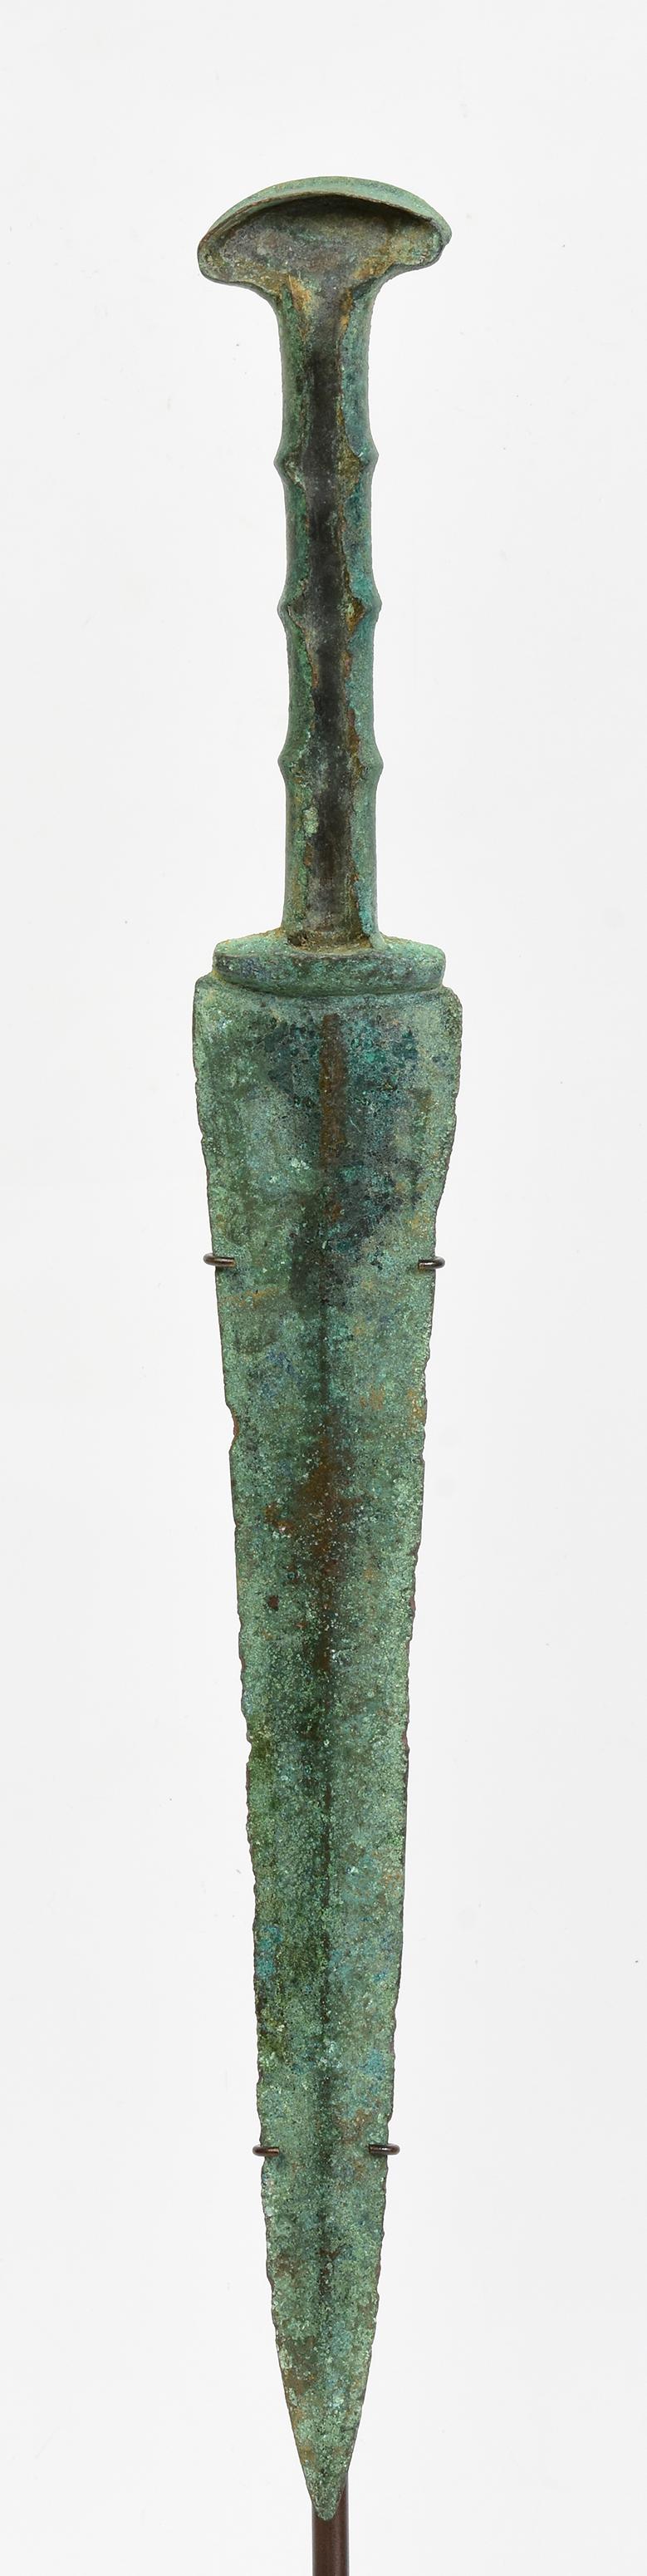 Antike Luristan Bronze Kurzschwert mit grüner Patina.

Luristan-Bronze stammt aus der Provinz Lorestan, einer Region im heutigen Westiran im Zagros-Gebirge. Mit ihrer reichen und langen Geschichte ist die luristanische Kultur für ihre faszinierenden